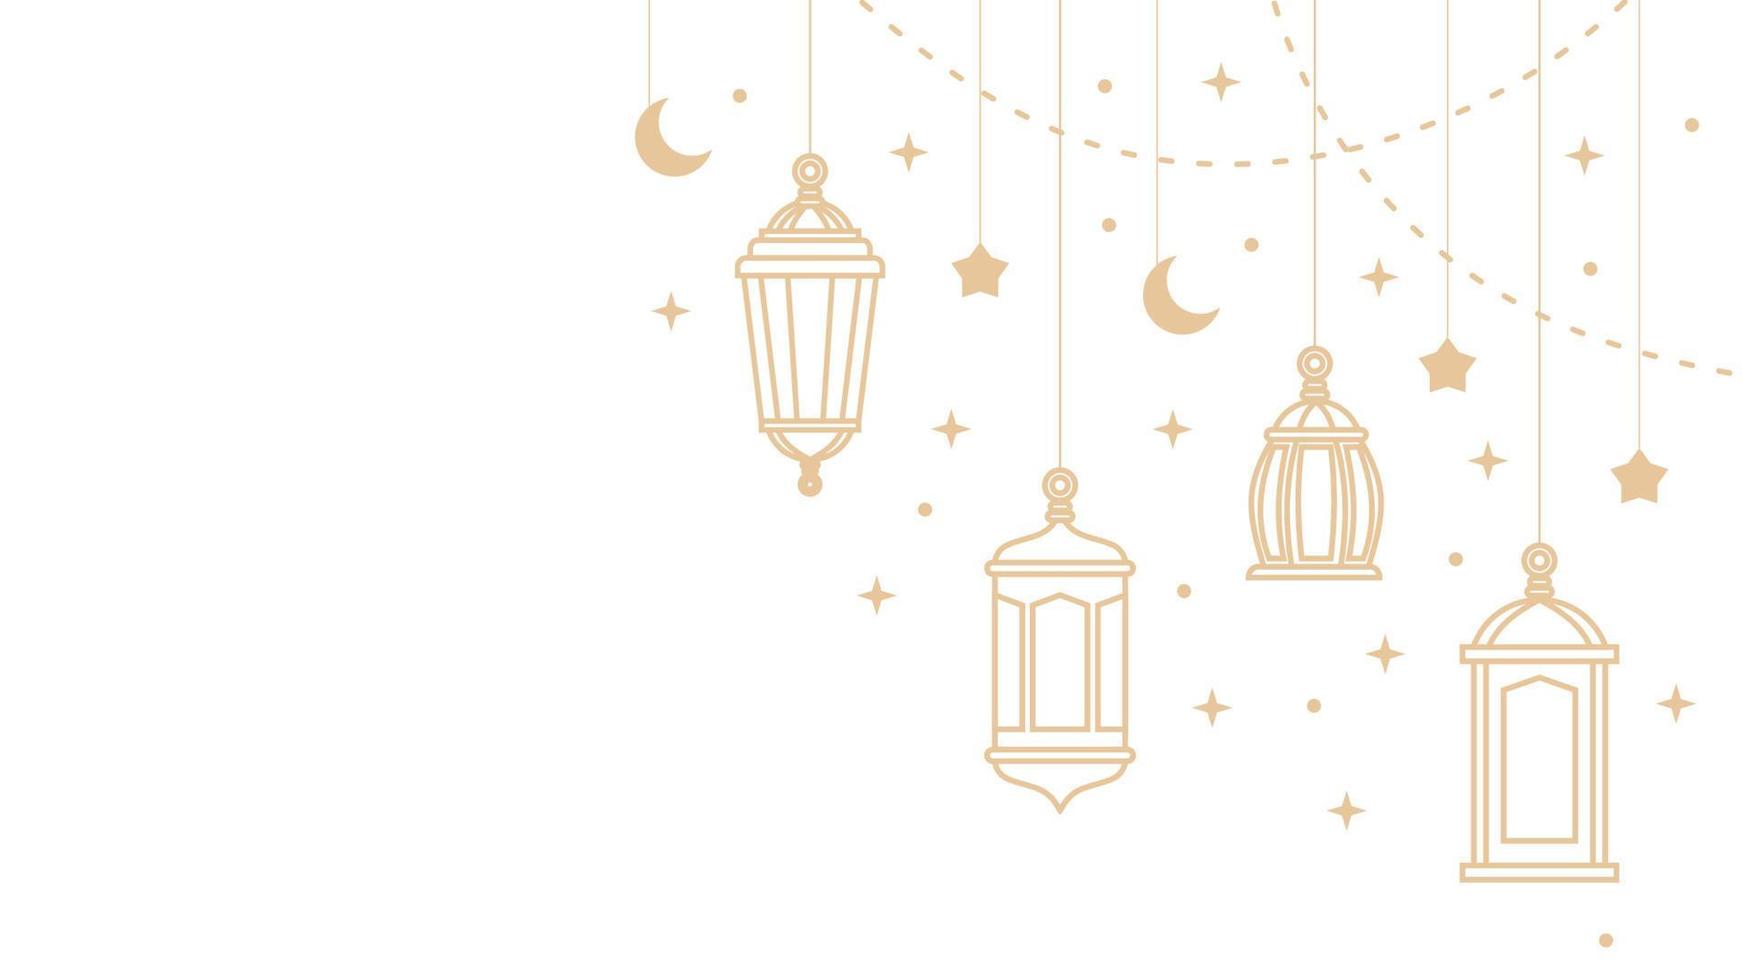 quattro sospeso Ramadan lanterne e islamico ornamenti vettore